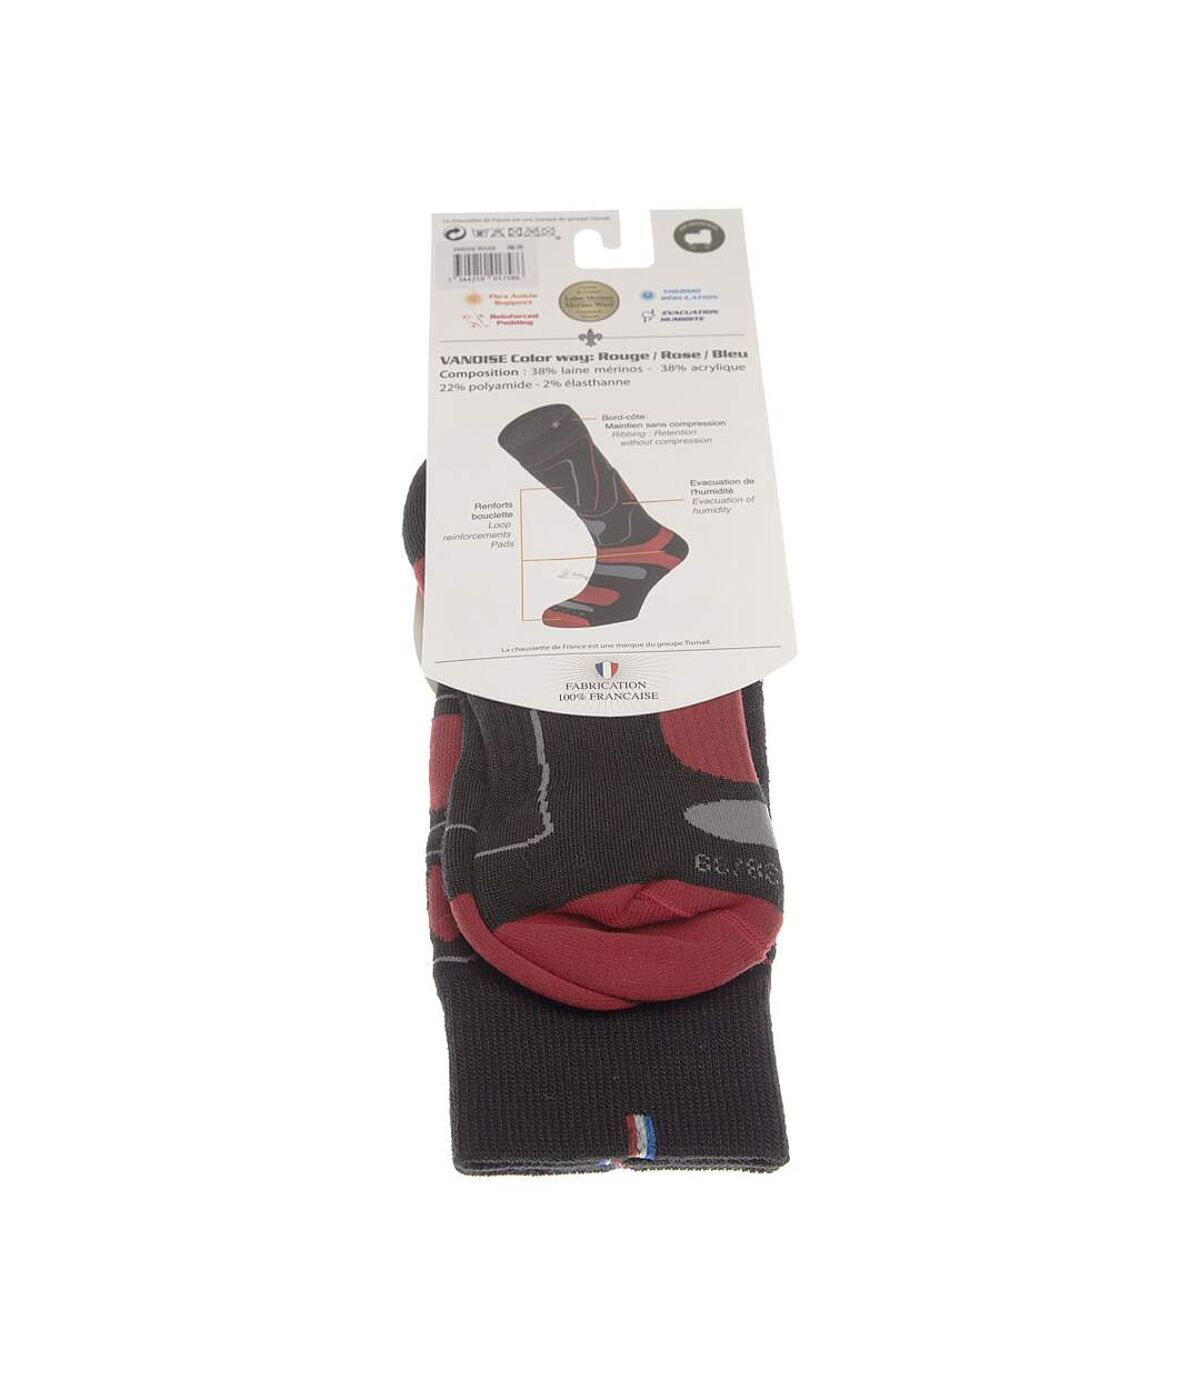 Chaussette Longues - 1 paire - Resserrage cou de pied - Non comprimantes - Bouclette talon et orteil - Pointe colorée - Ski - Chaude - Acrylique - Noir - Vanoise rouge